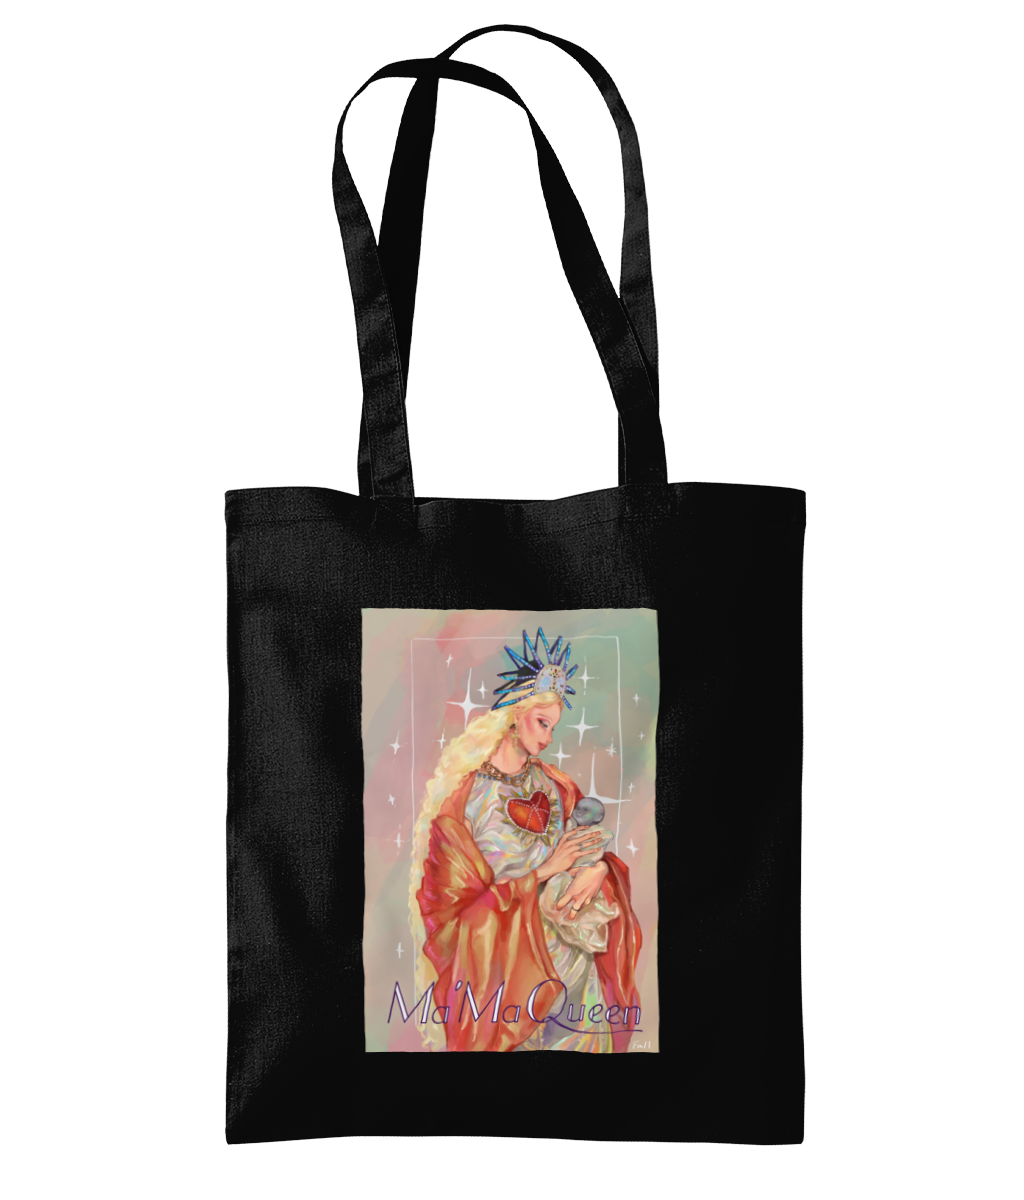 Ma'ma Queen - Tote Bag